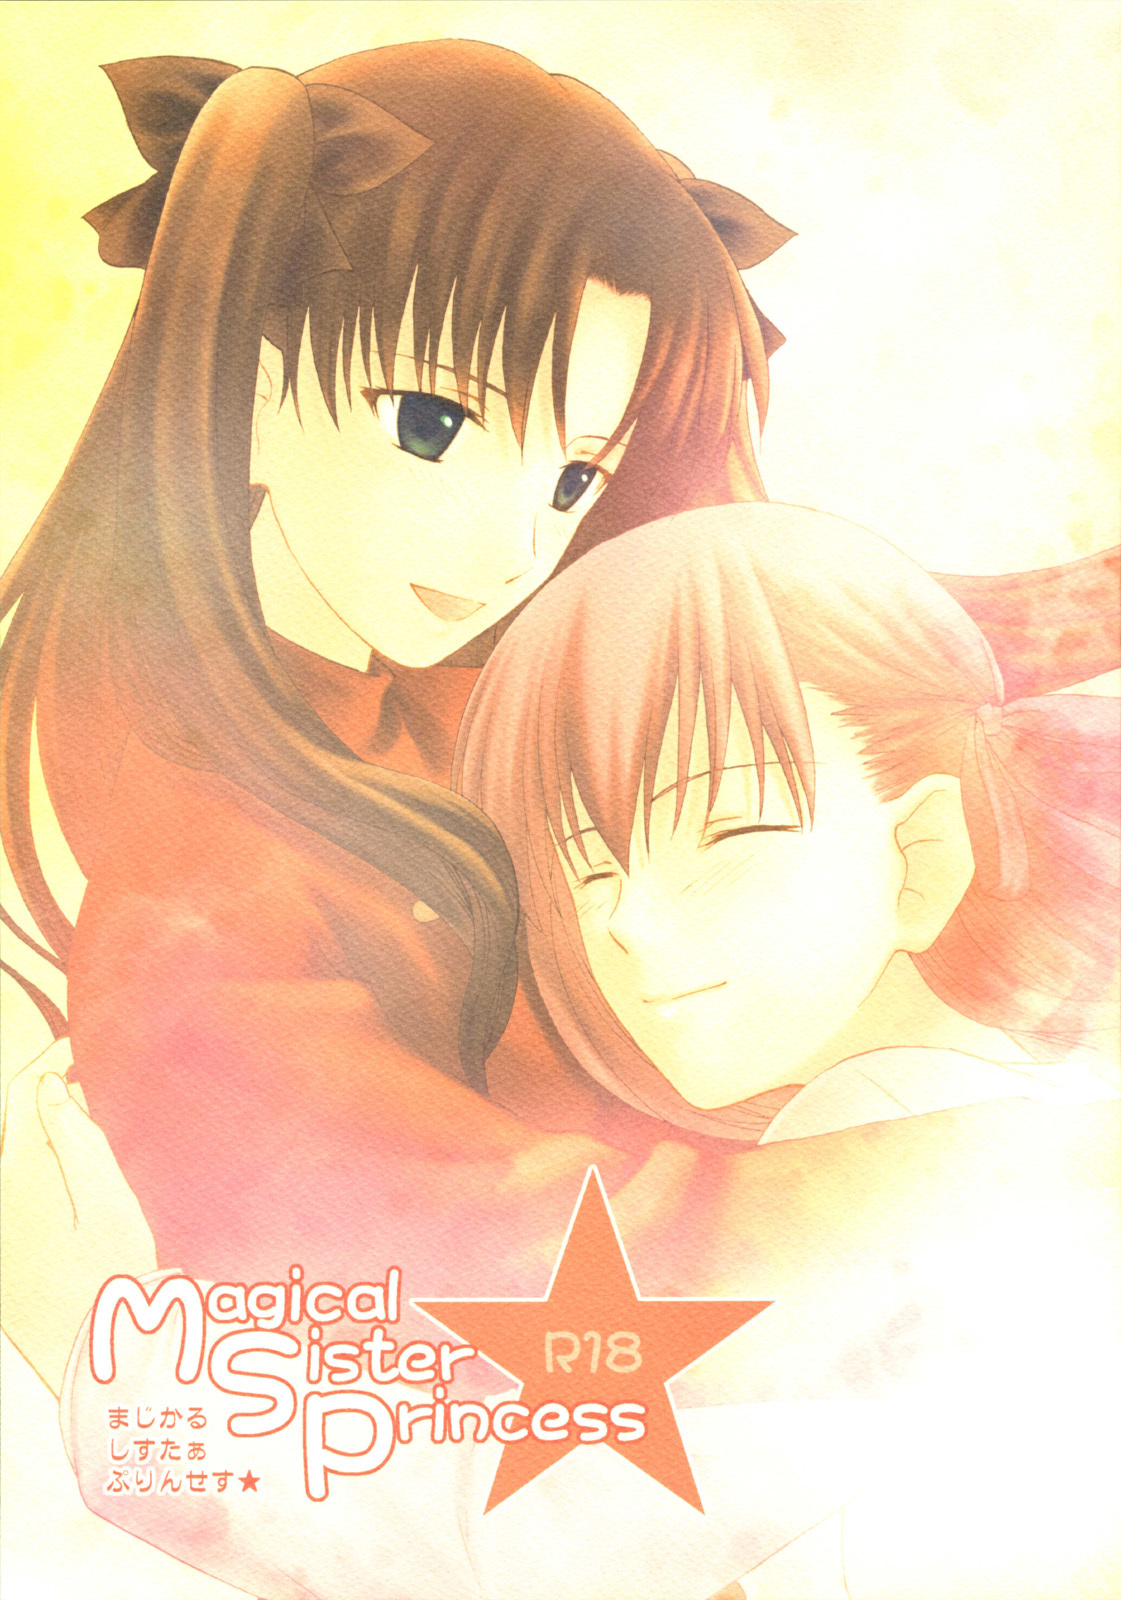 (SC29) [Angel Red (Kawashima Mitsuha)] Magical Sister Princess ★ (Fate/stay night) page 1 full